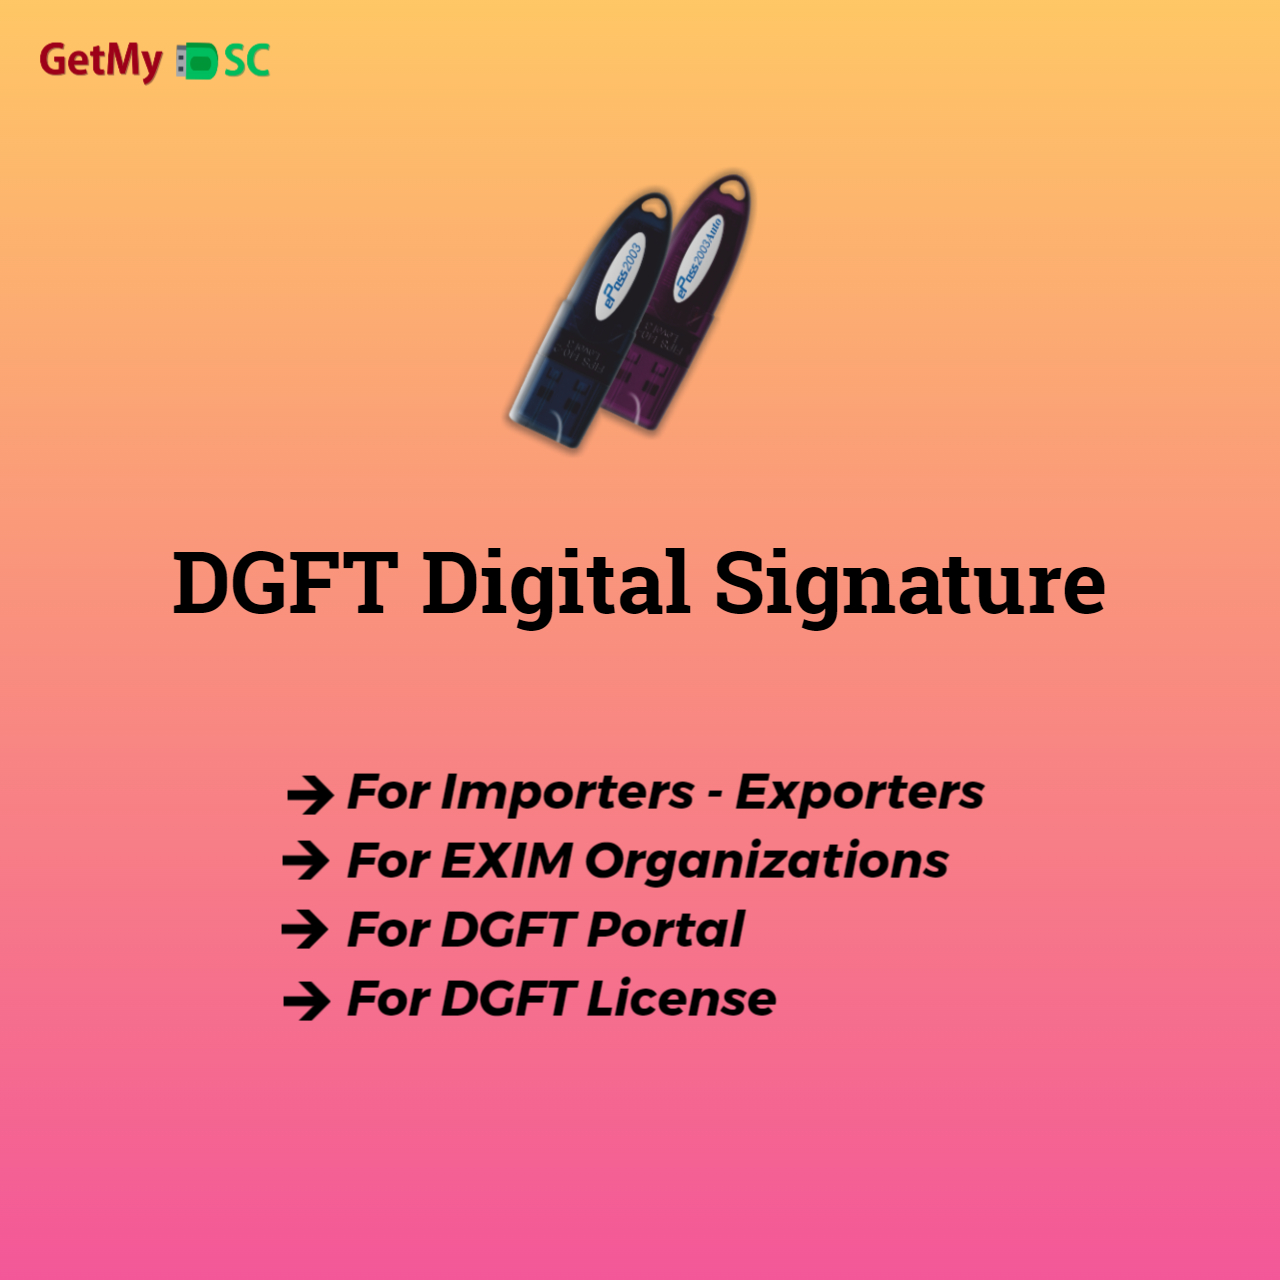 dgft-digital-signature